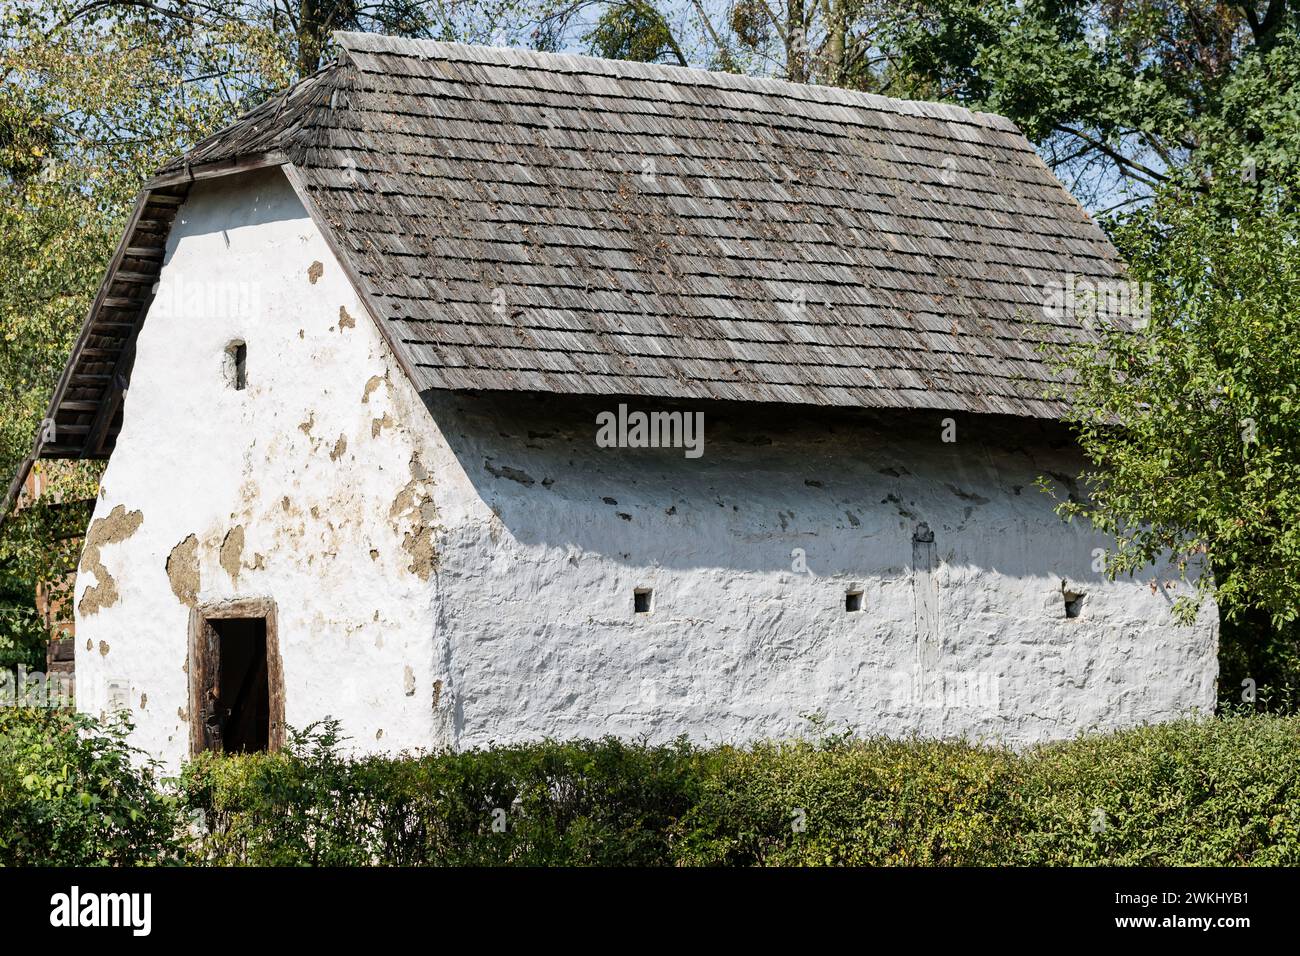 Vieux grenier dans le village polonais avec toit de tuiles en bois et façade en argile calcaire blanche. Ancien village allemand dans la région d'Opole, Pologne Banque D'Images